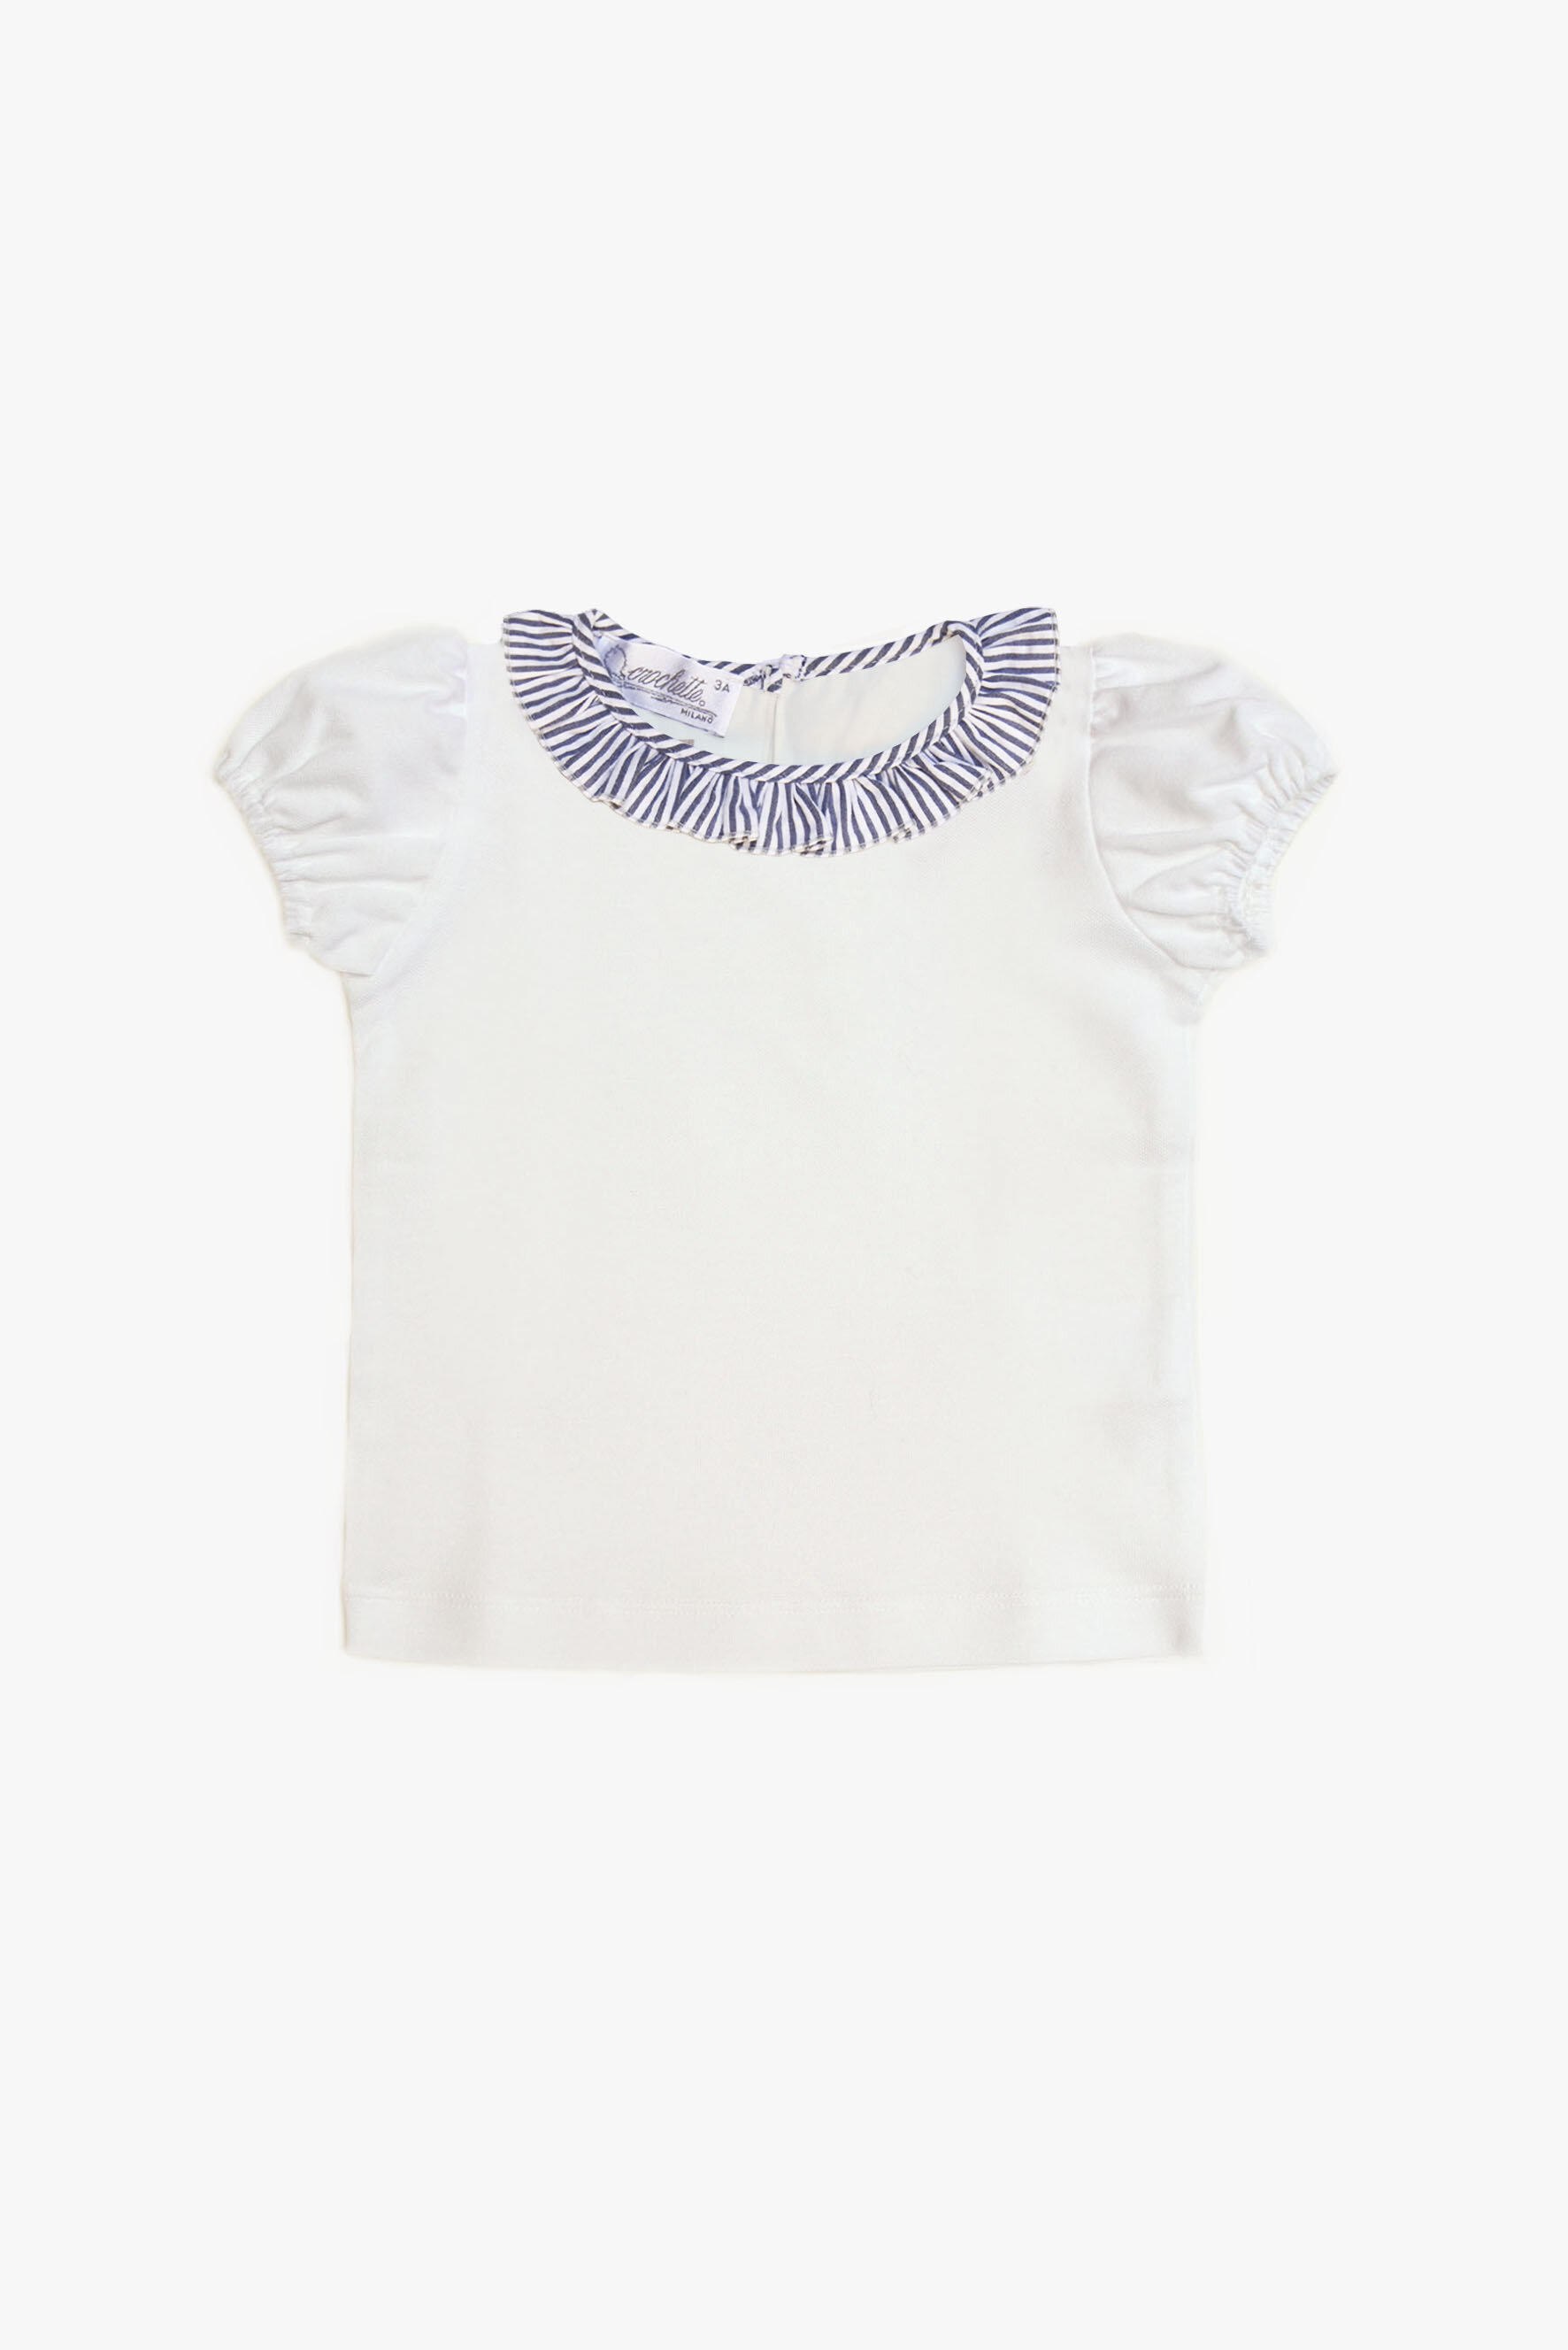 Maglietta bambina bianca con ruches a righe blu